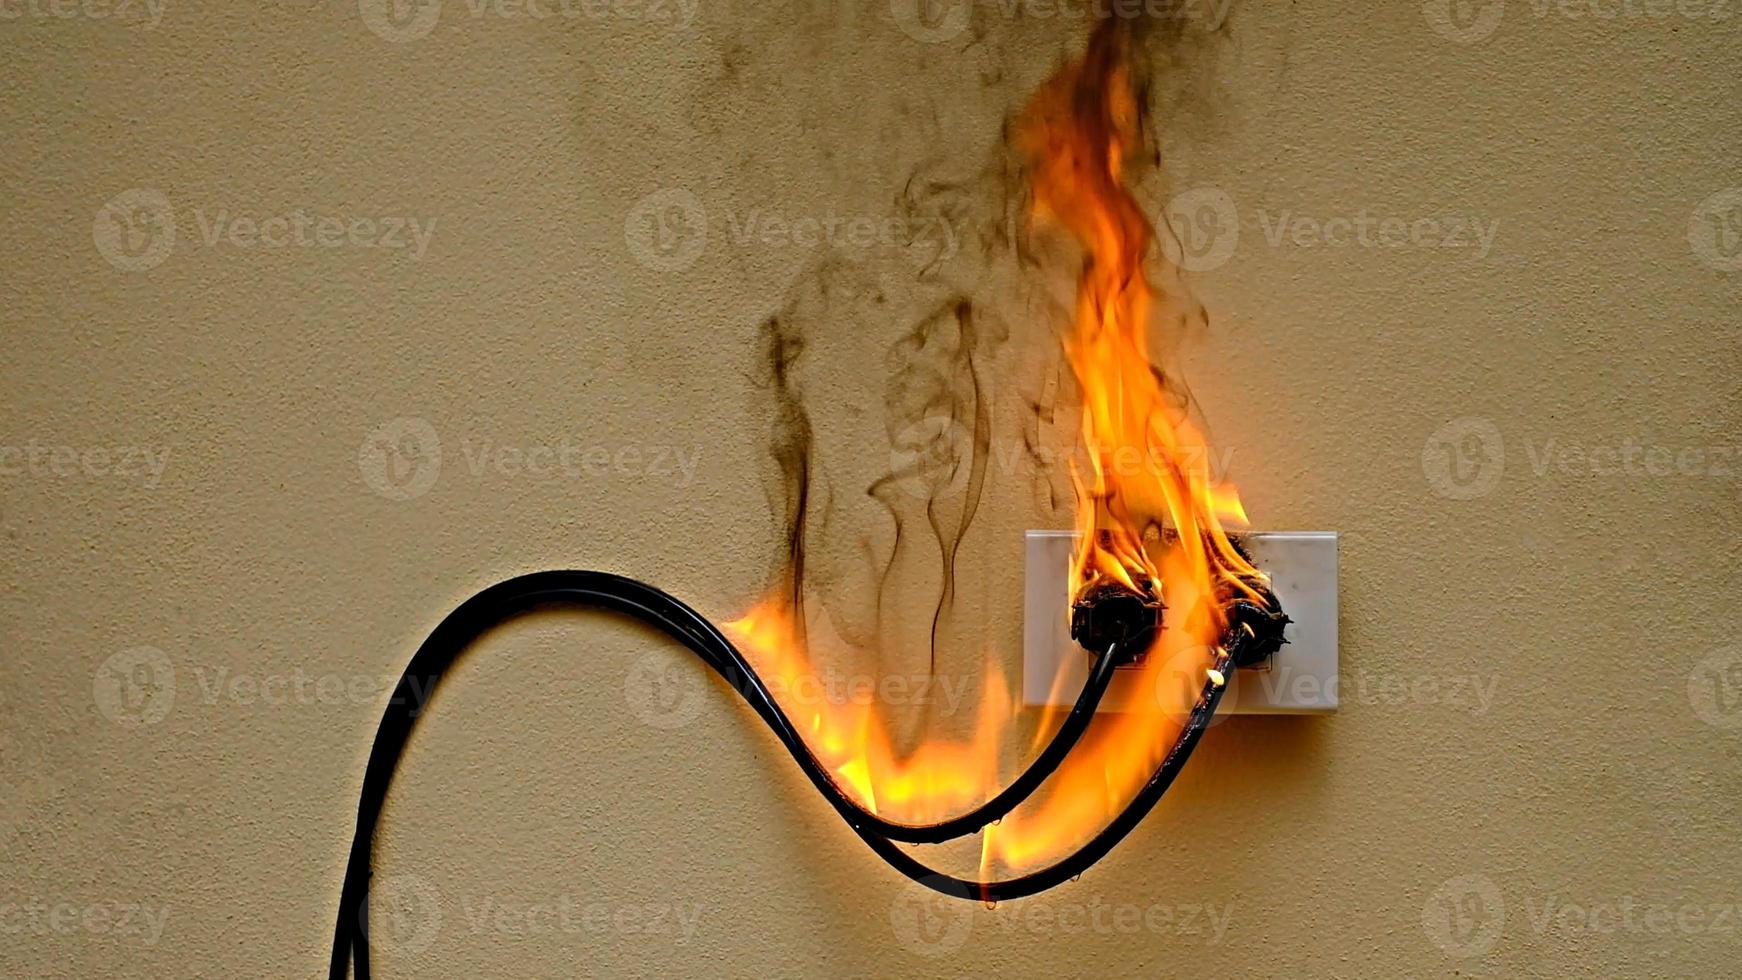 on fire elektrische kabel steckdose auf dem betonwand hintergrund foto